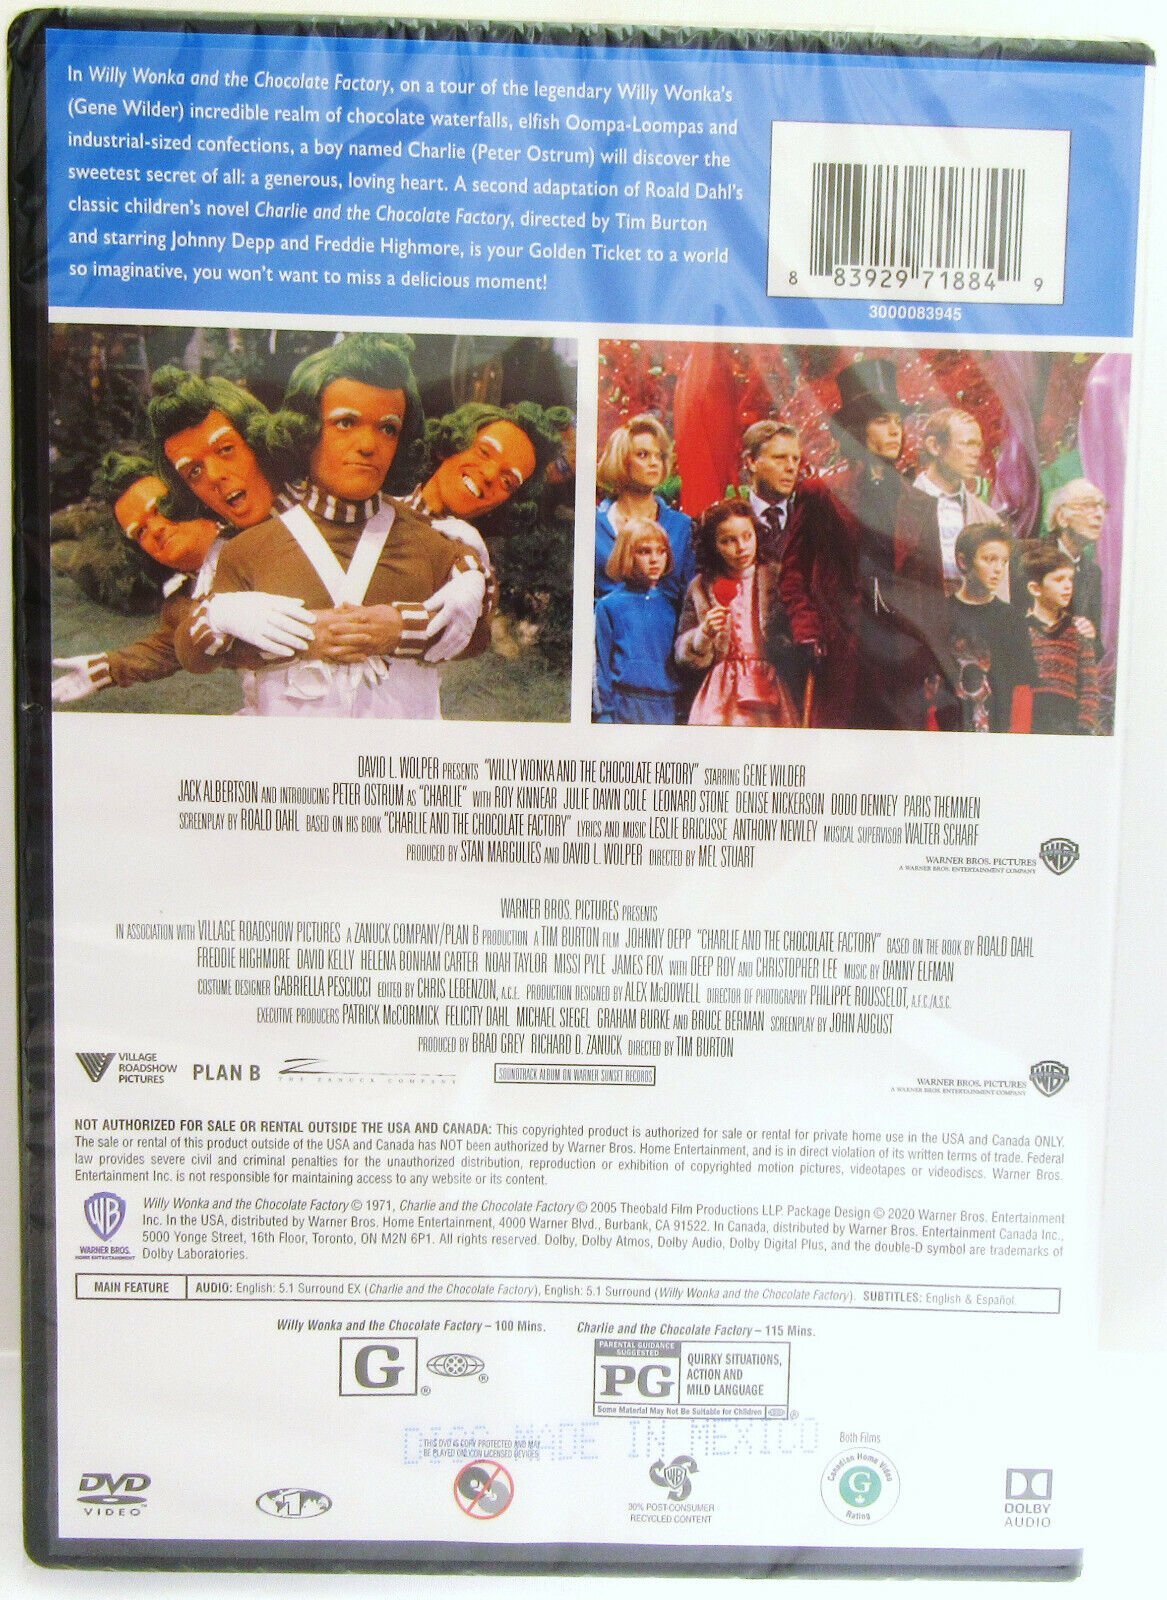 Pack Série Films - Collection Charlie et la chocolaterie - Orange